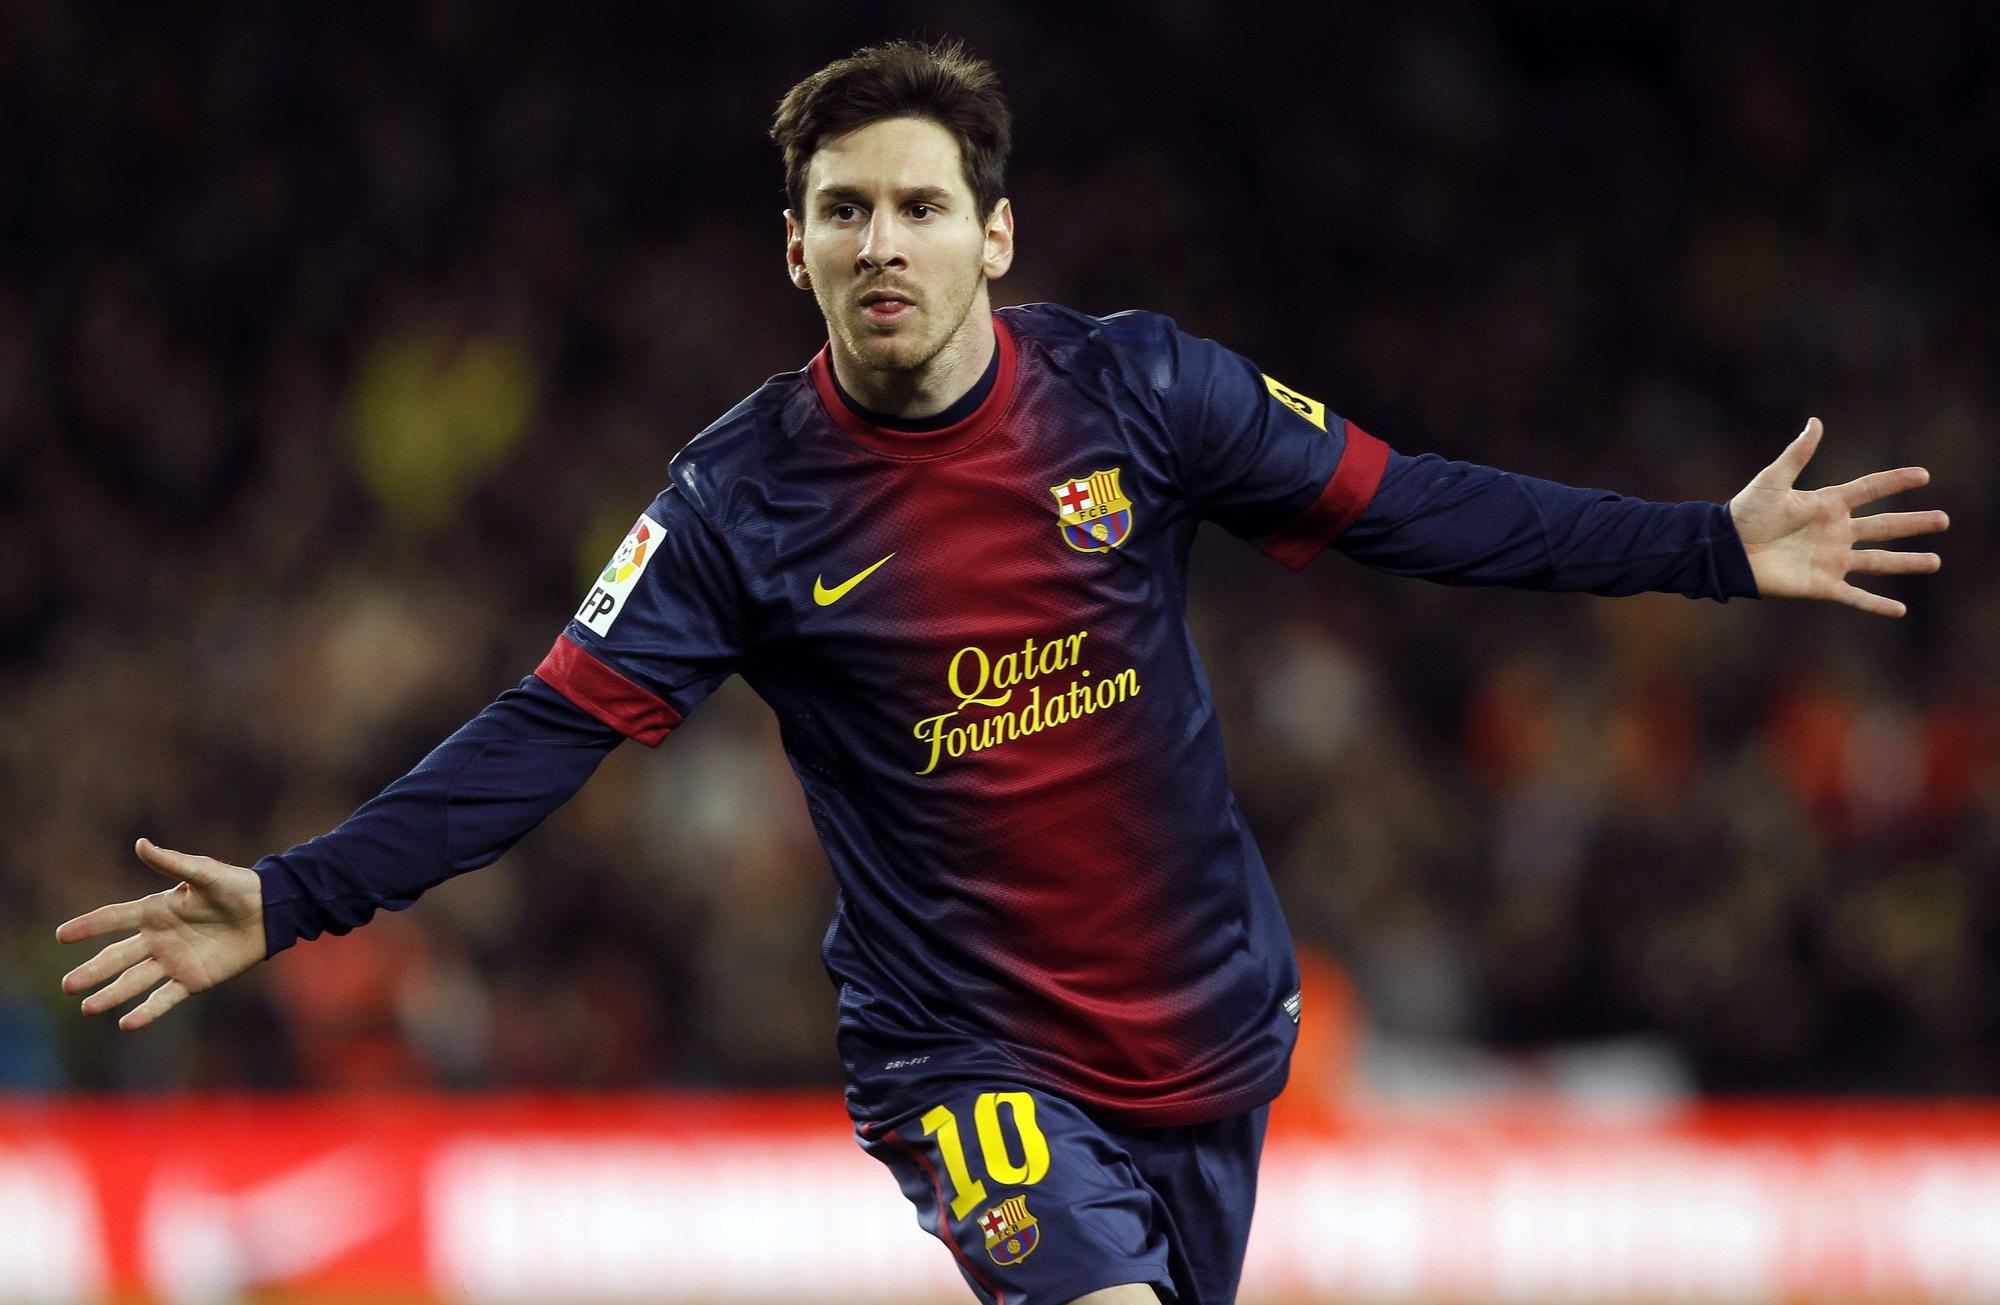 Los 34 años de Messi en 34 imágenes